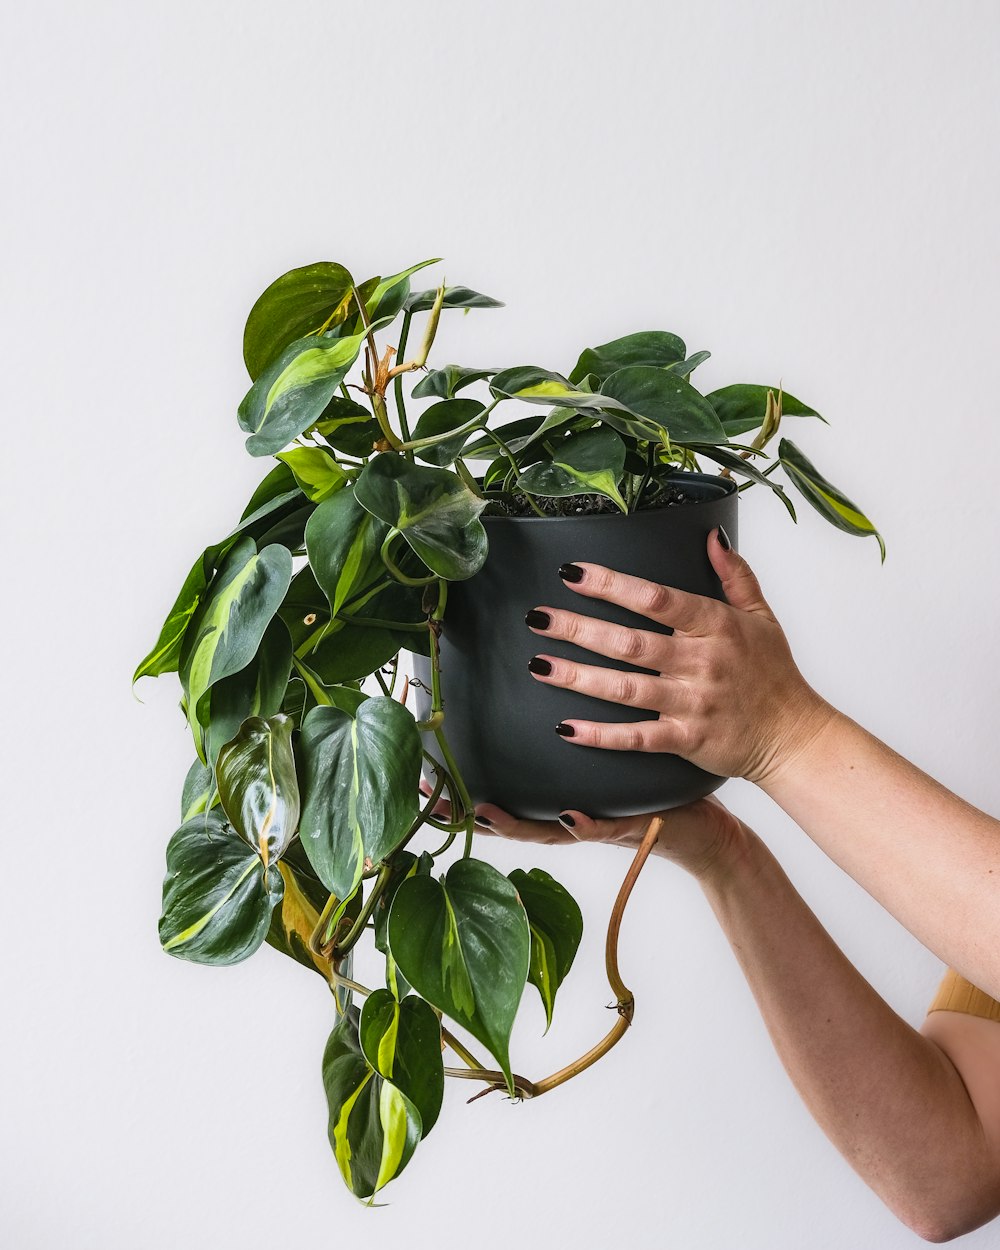 una persona sosteniendo una planta en maceta